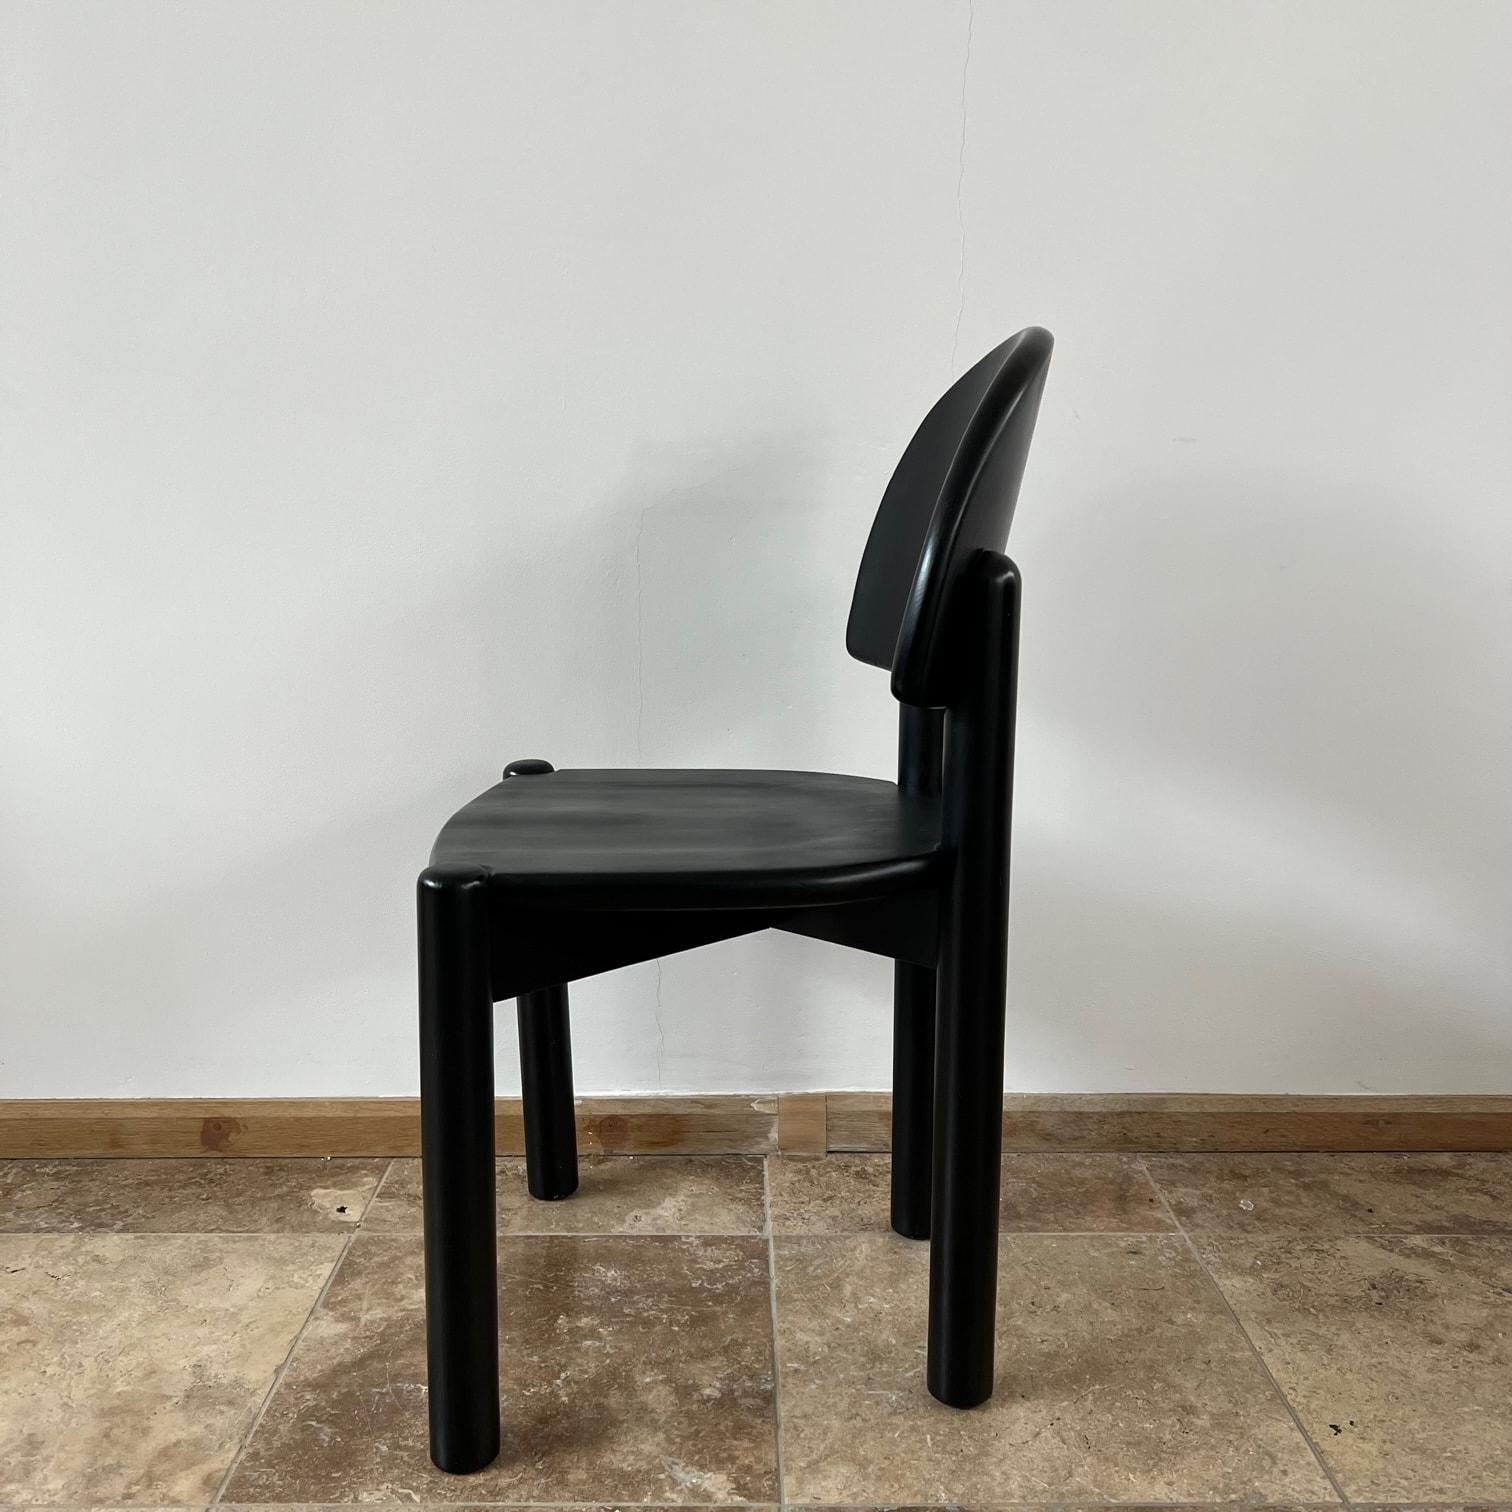 Rainer Daumiller Dining Chairs, hergestellt von der schwedischen Firma Hirtshals. 

Schwedisch, 1970er Jahre 

Massive Kiefer, unglaubliche Bauqualität, solide und stabil.

Die geschwungene Rückenlehne macht diese Vollholzvariante dennoch bequem.